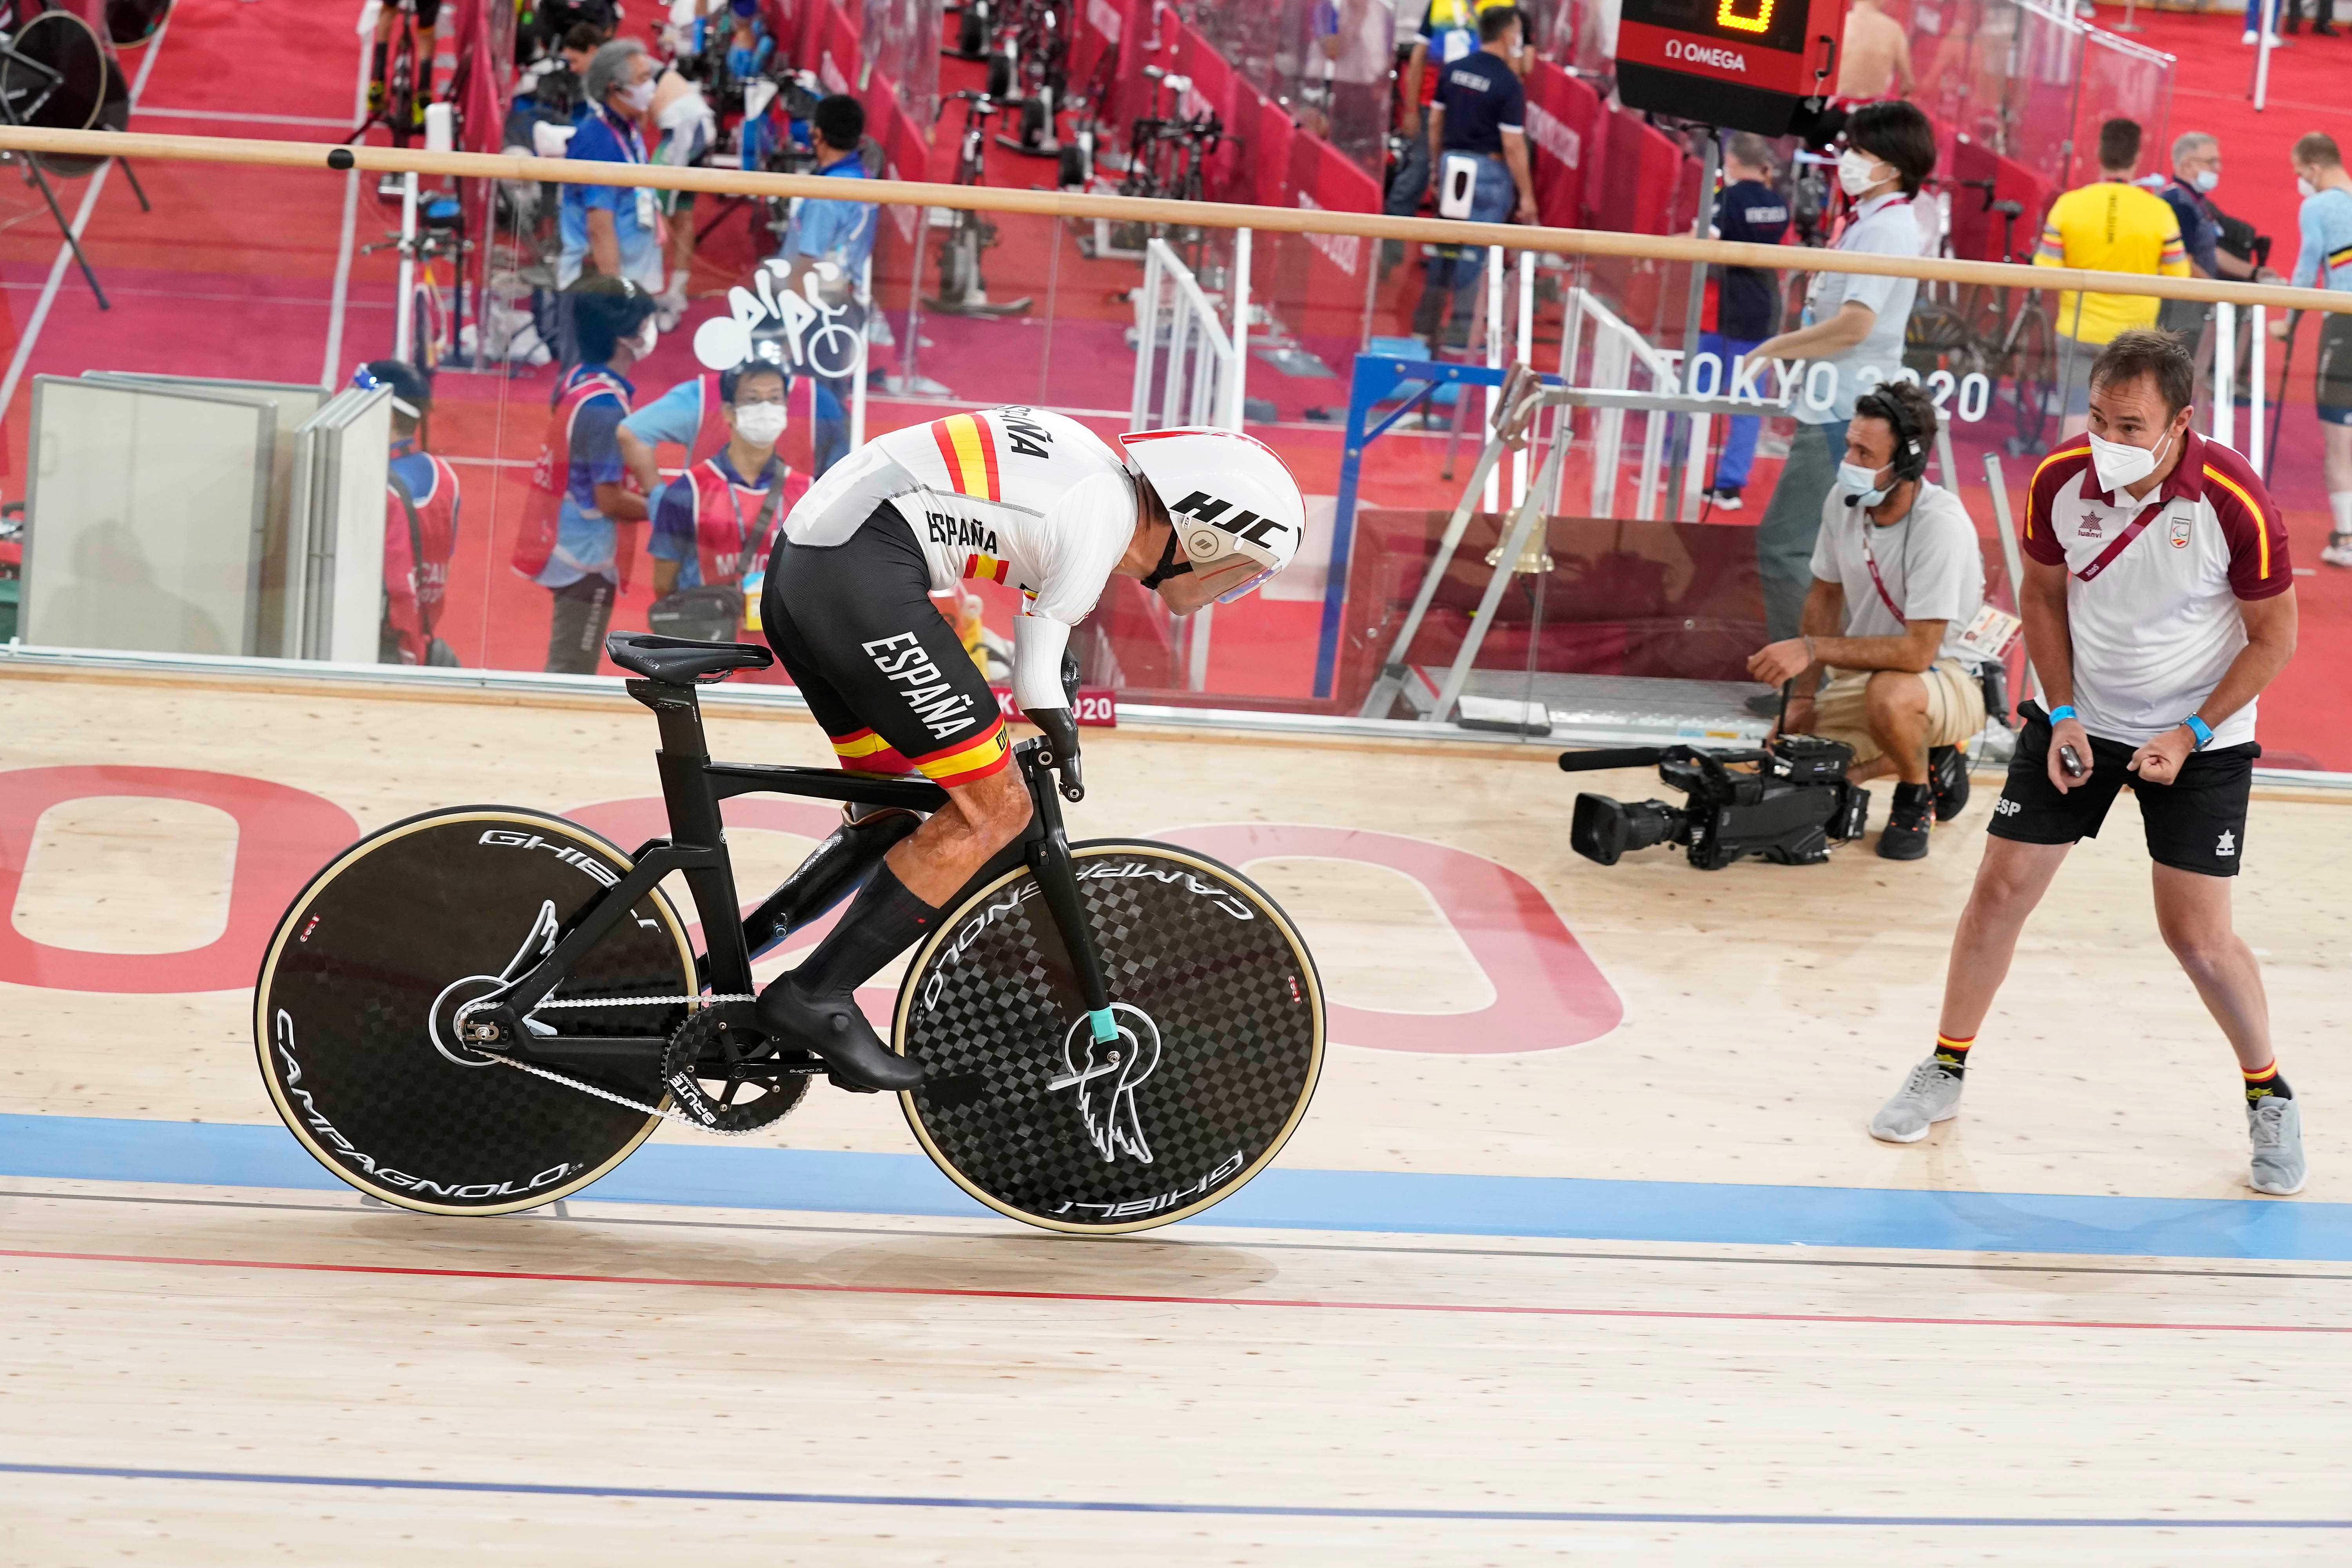 Alfonso Cabello da a España el primer oro en los Juegos Paralímpicos de Tokio